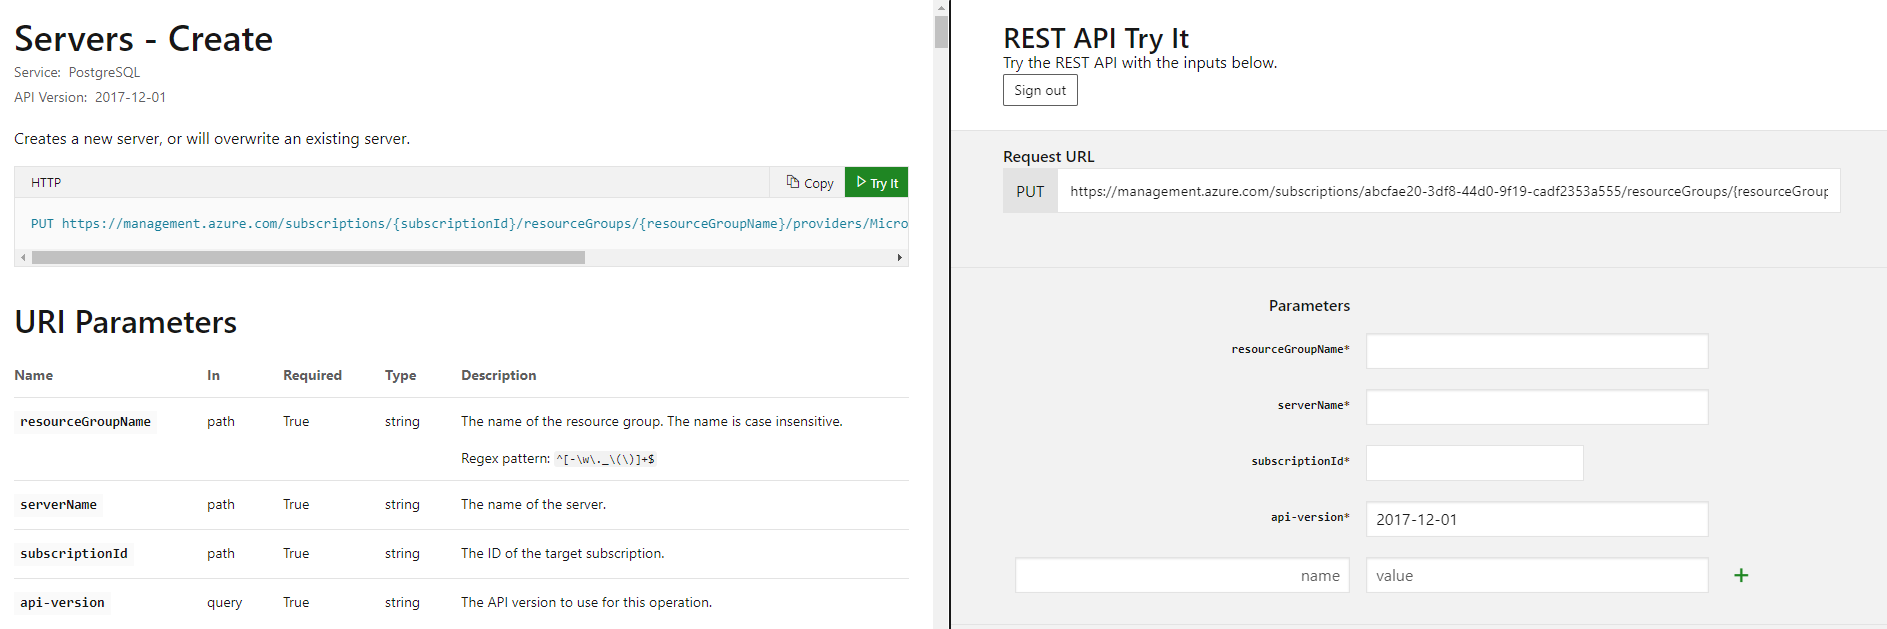 Erstellen eines Servers mit der REST-API